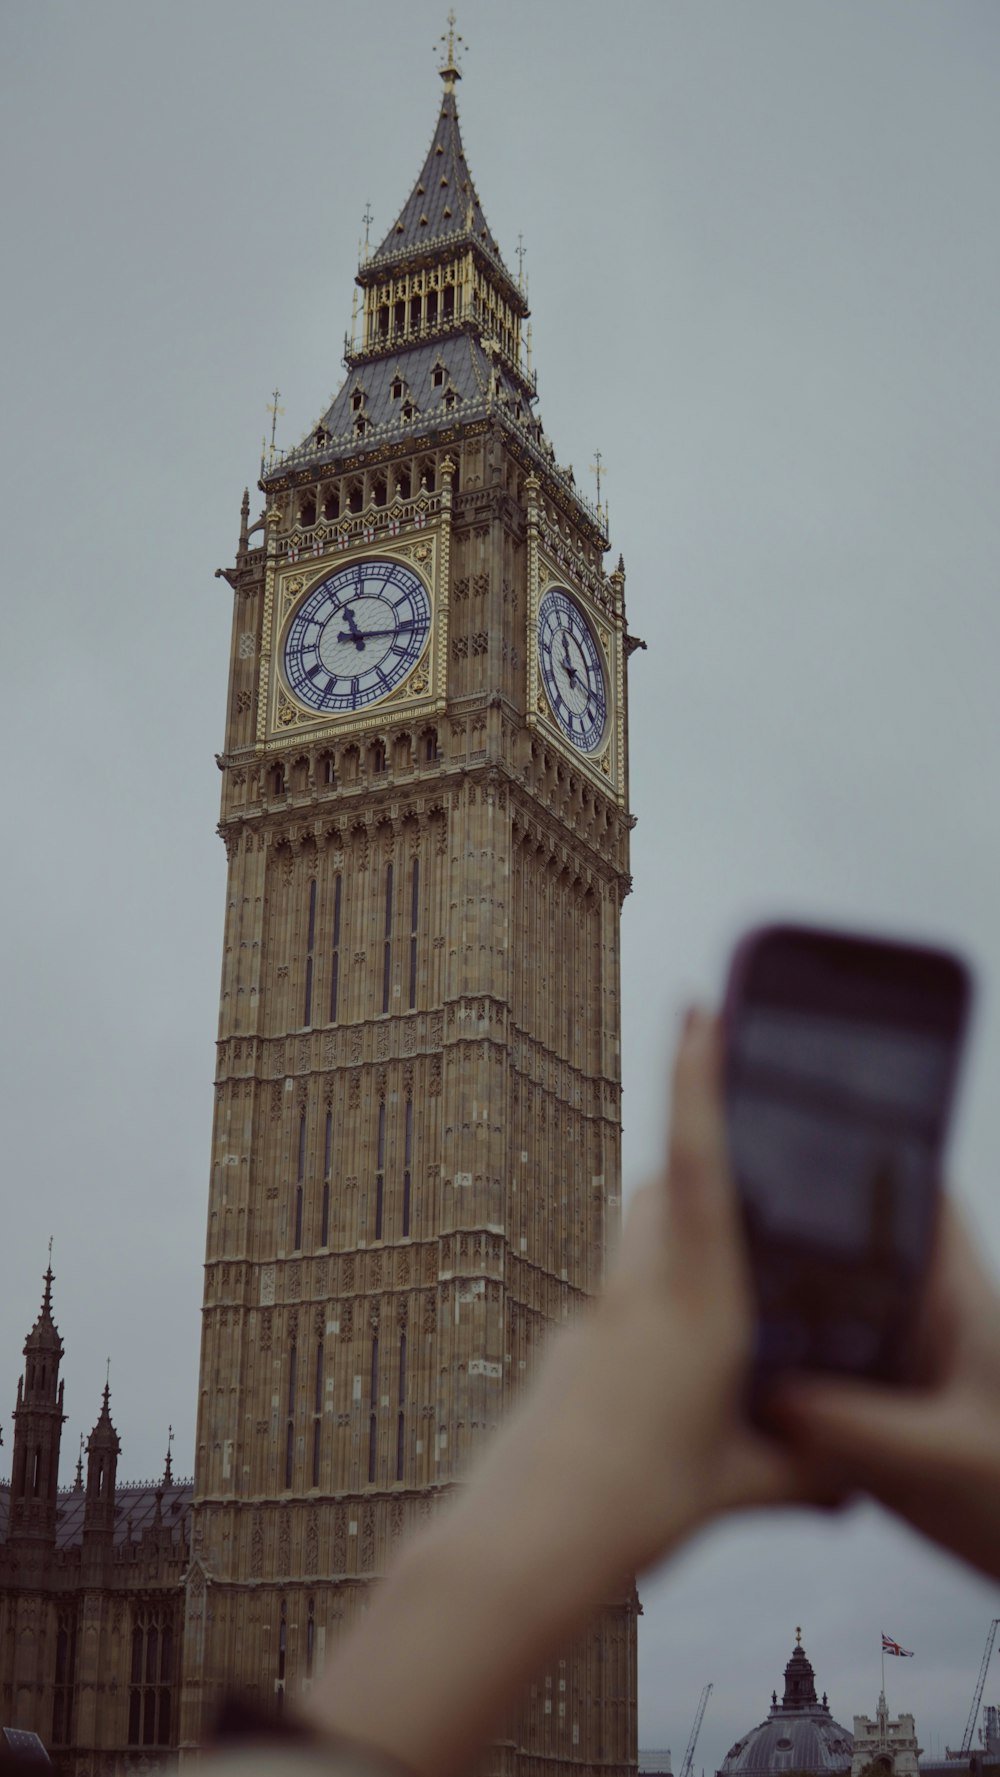 Una persona che scatta una foto della torre dell'orologio del Big Ben